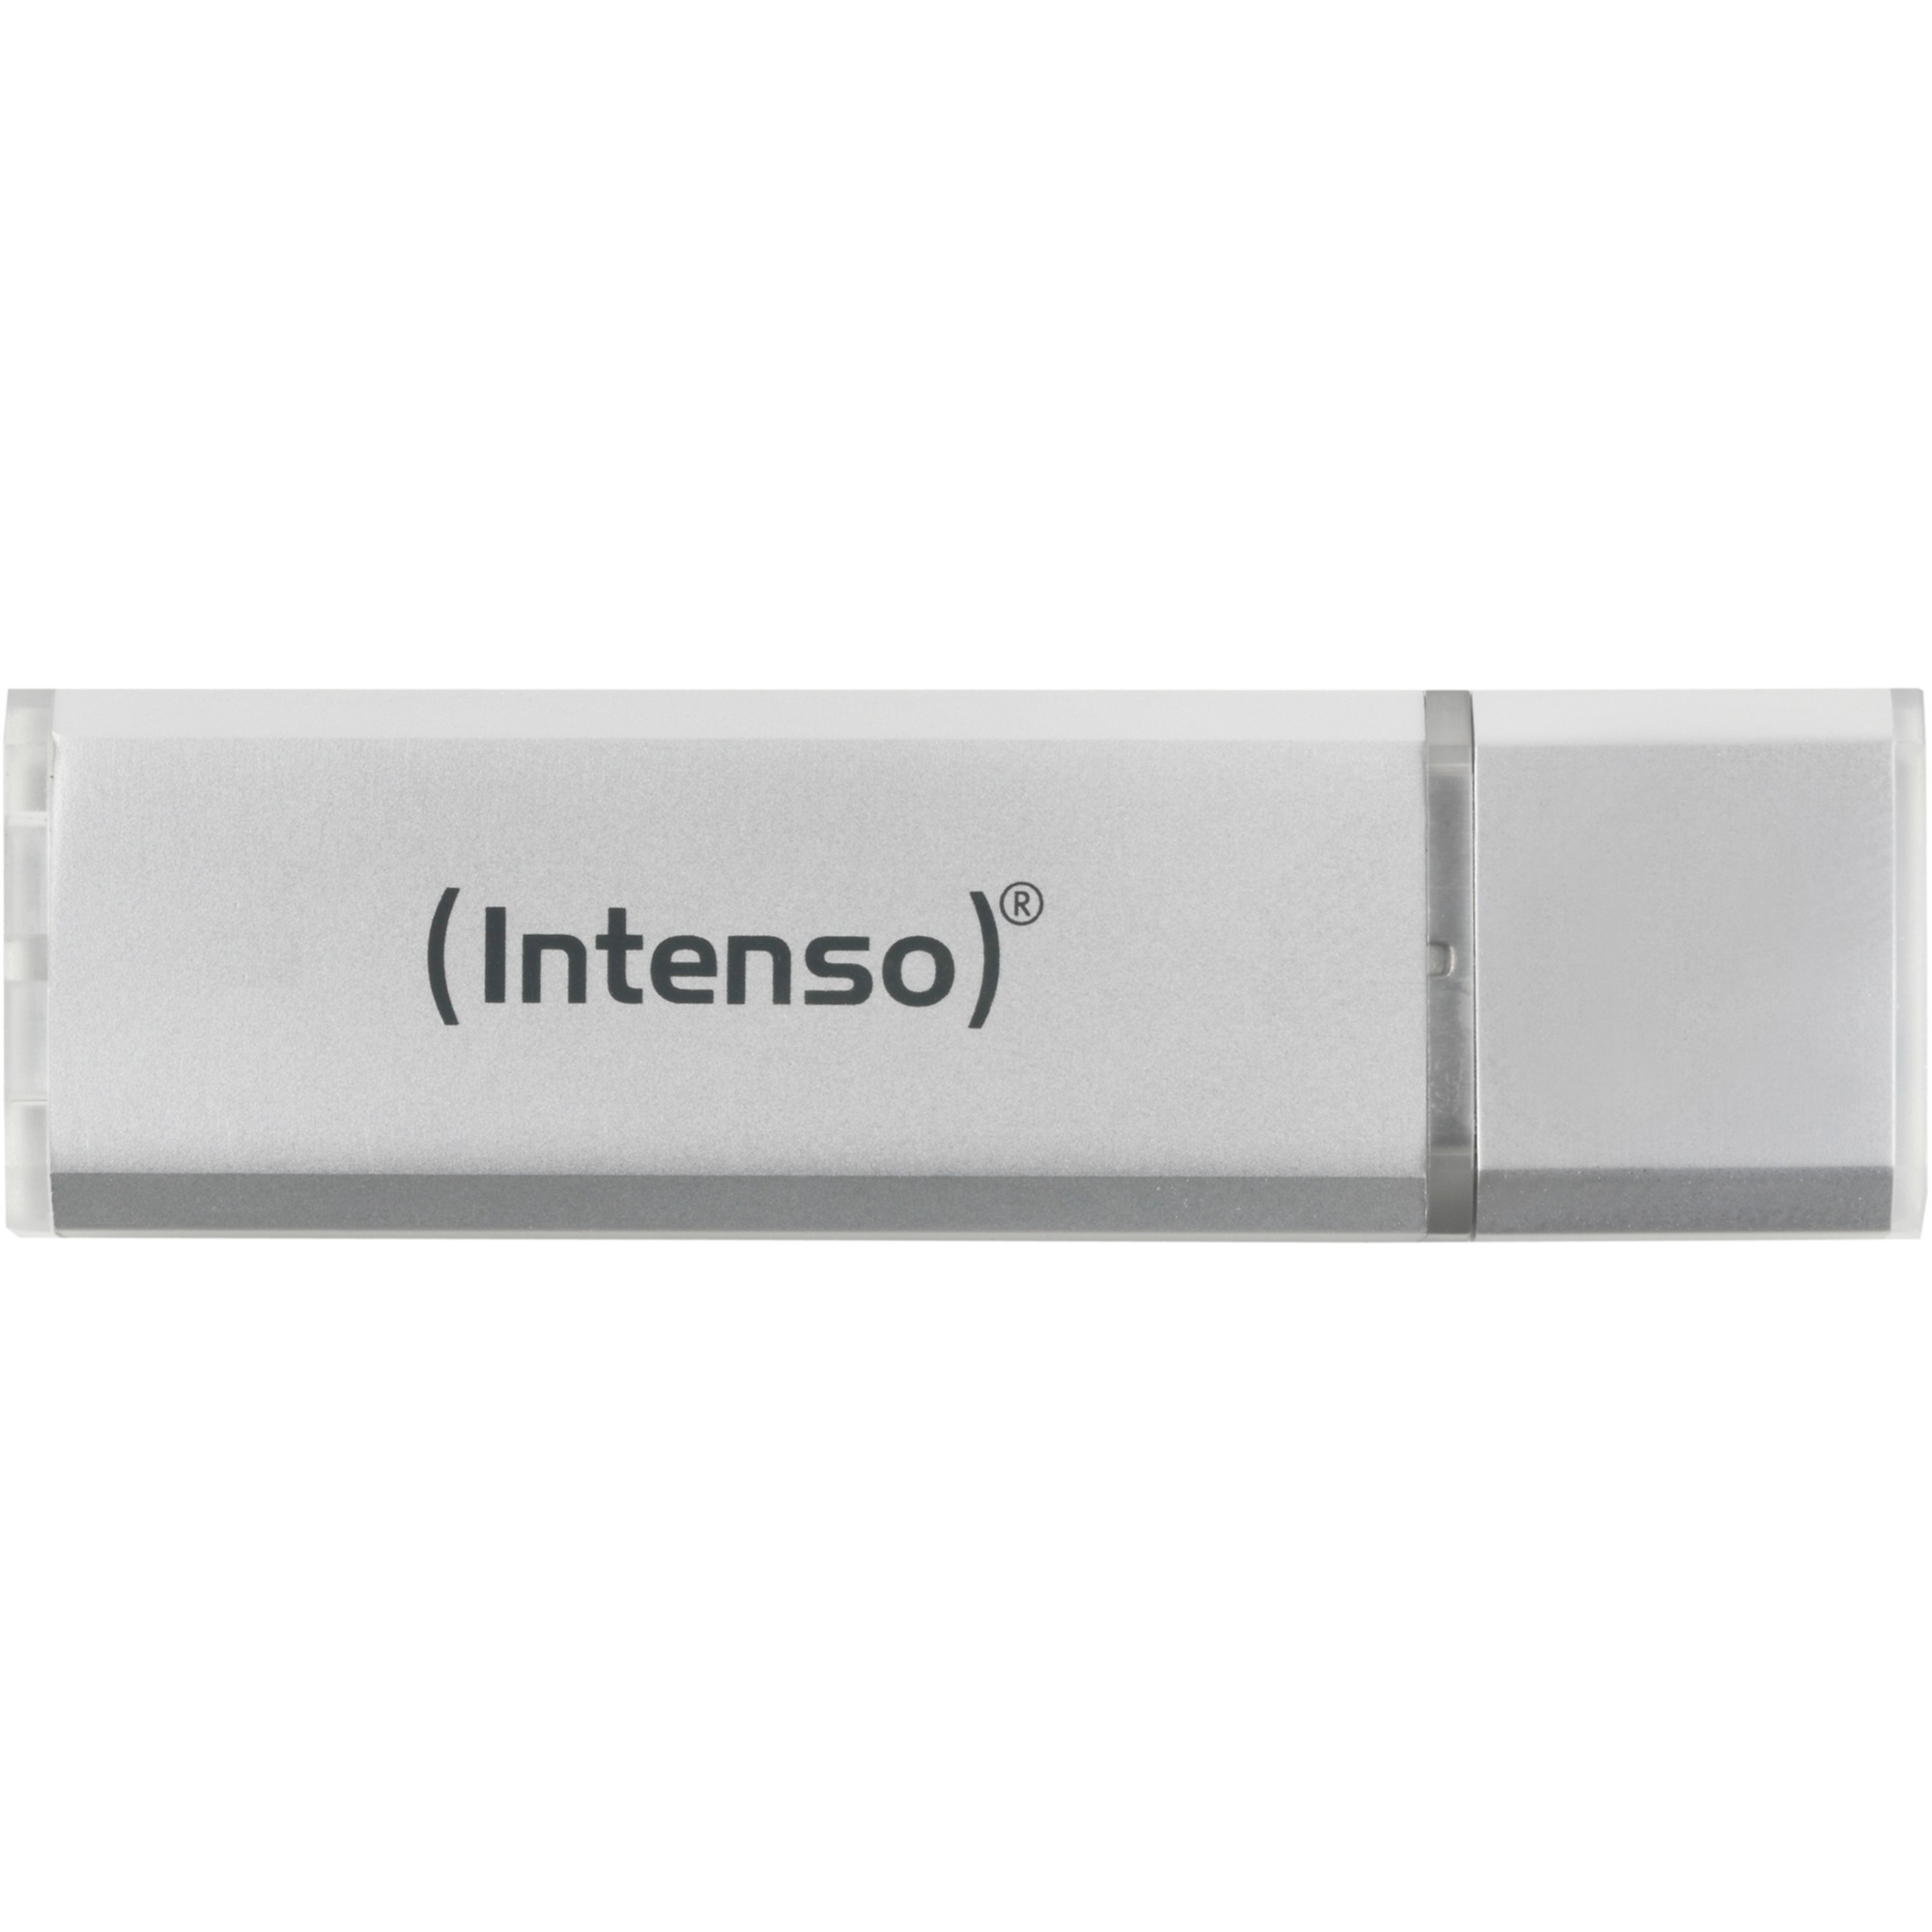 Image of Alternate - Alu Line 4 GB, USB-Stick online einkaufen bei Alternate